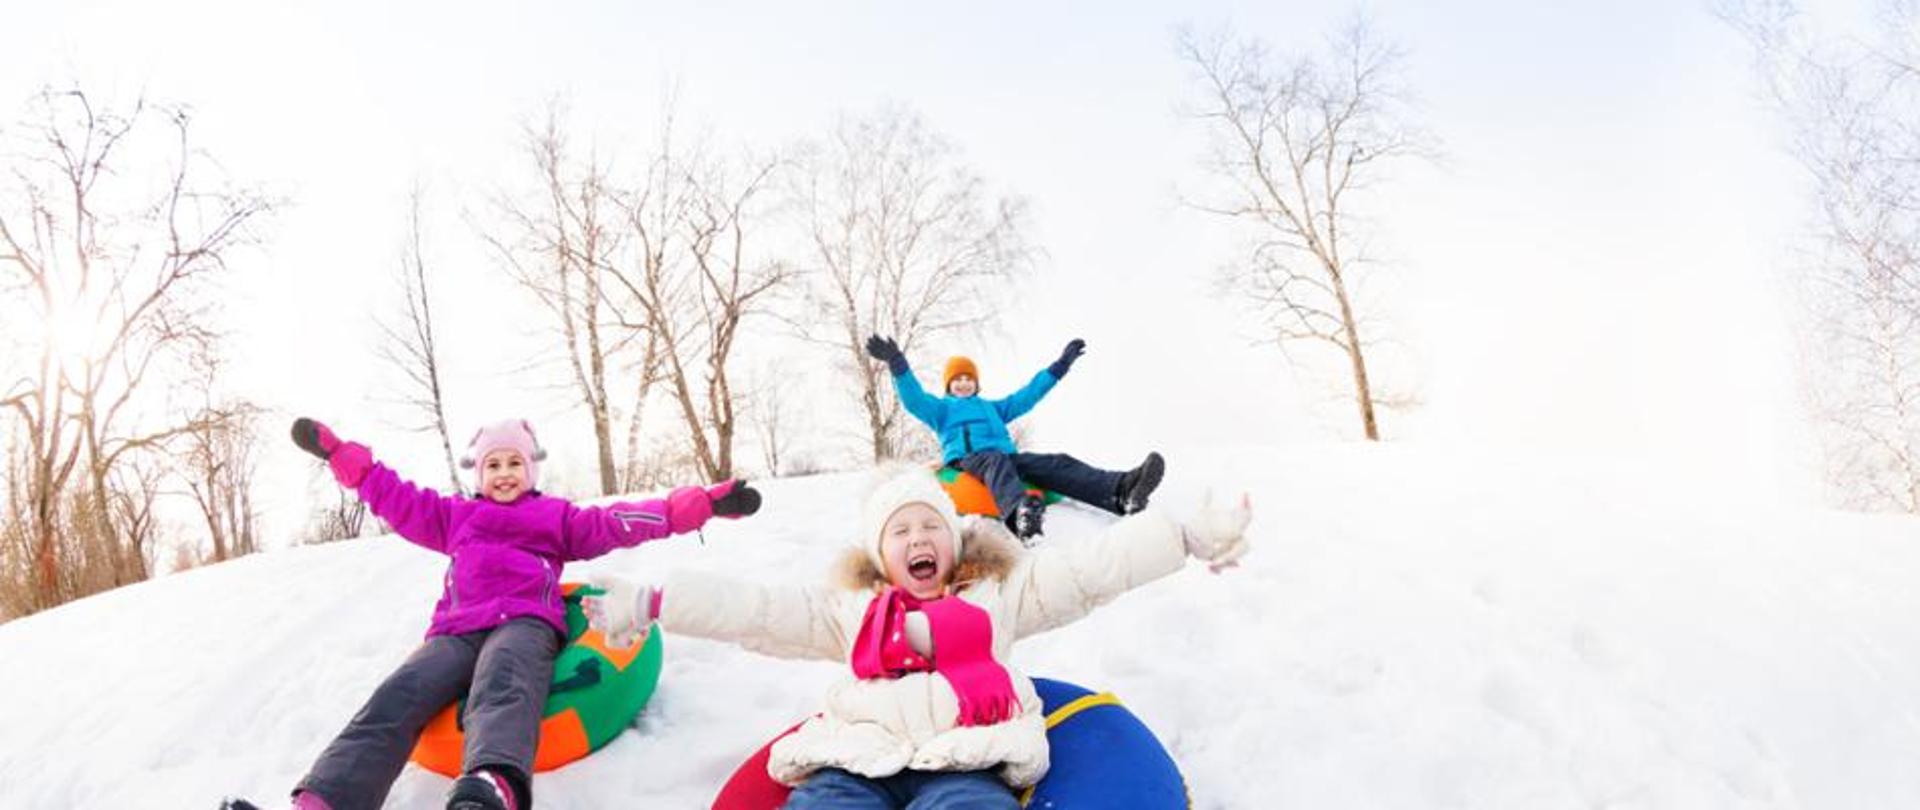 Na zdjęciu widzimy trójkę dzieci bawiących się na śniegu.